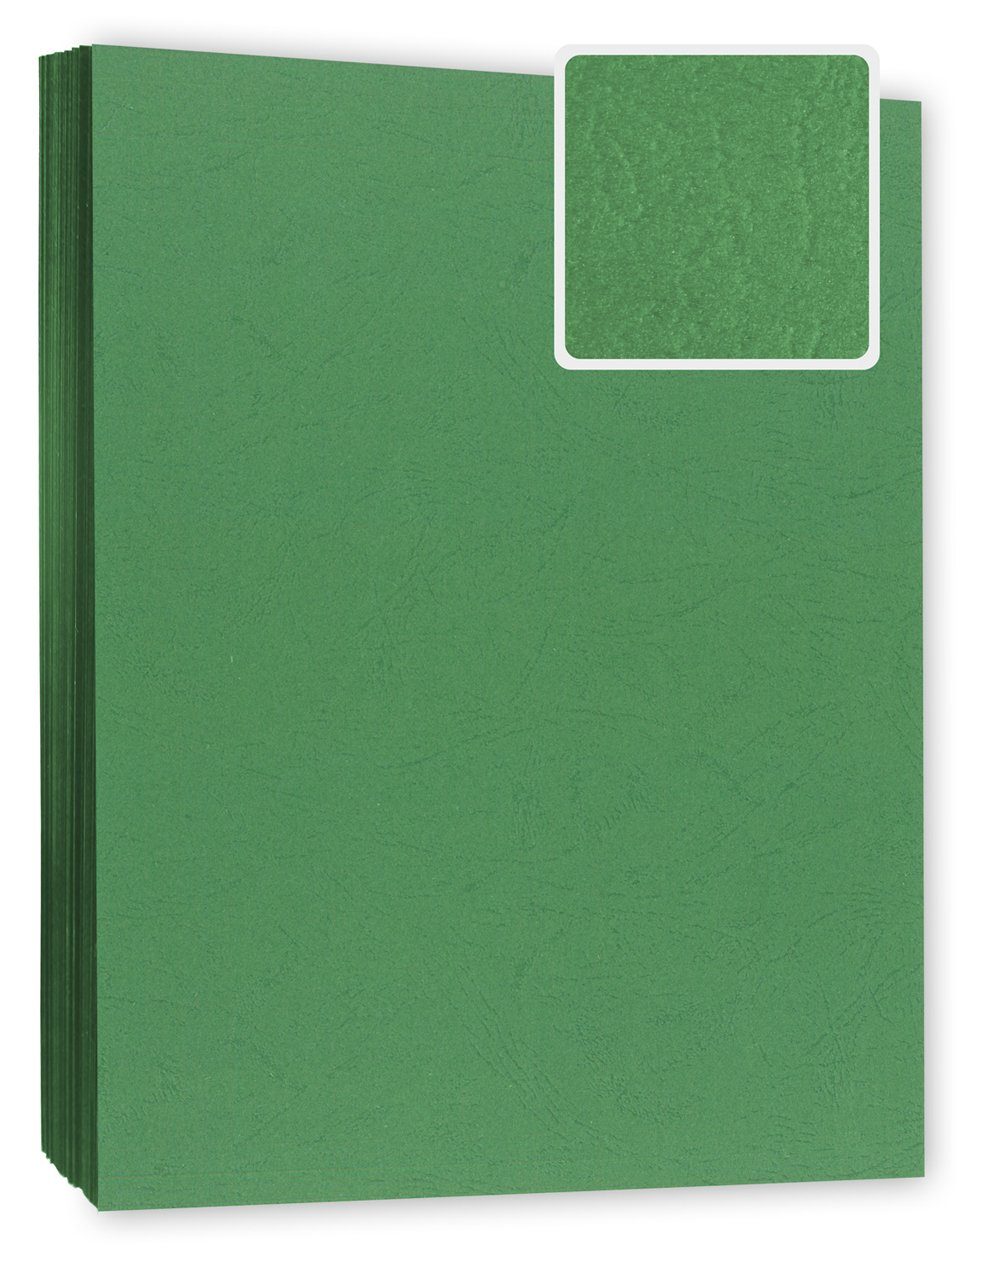 Kopierladen Berlin Papierkarton Bindekarton / Deckblatt, DIN A4 240 g/m², 100 Stück in Lederoptik grün